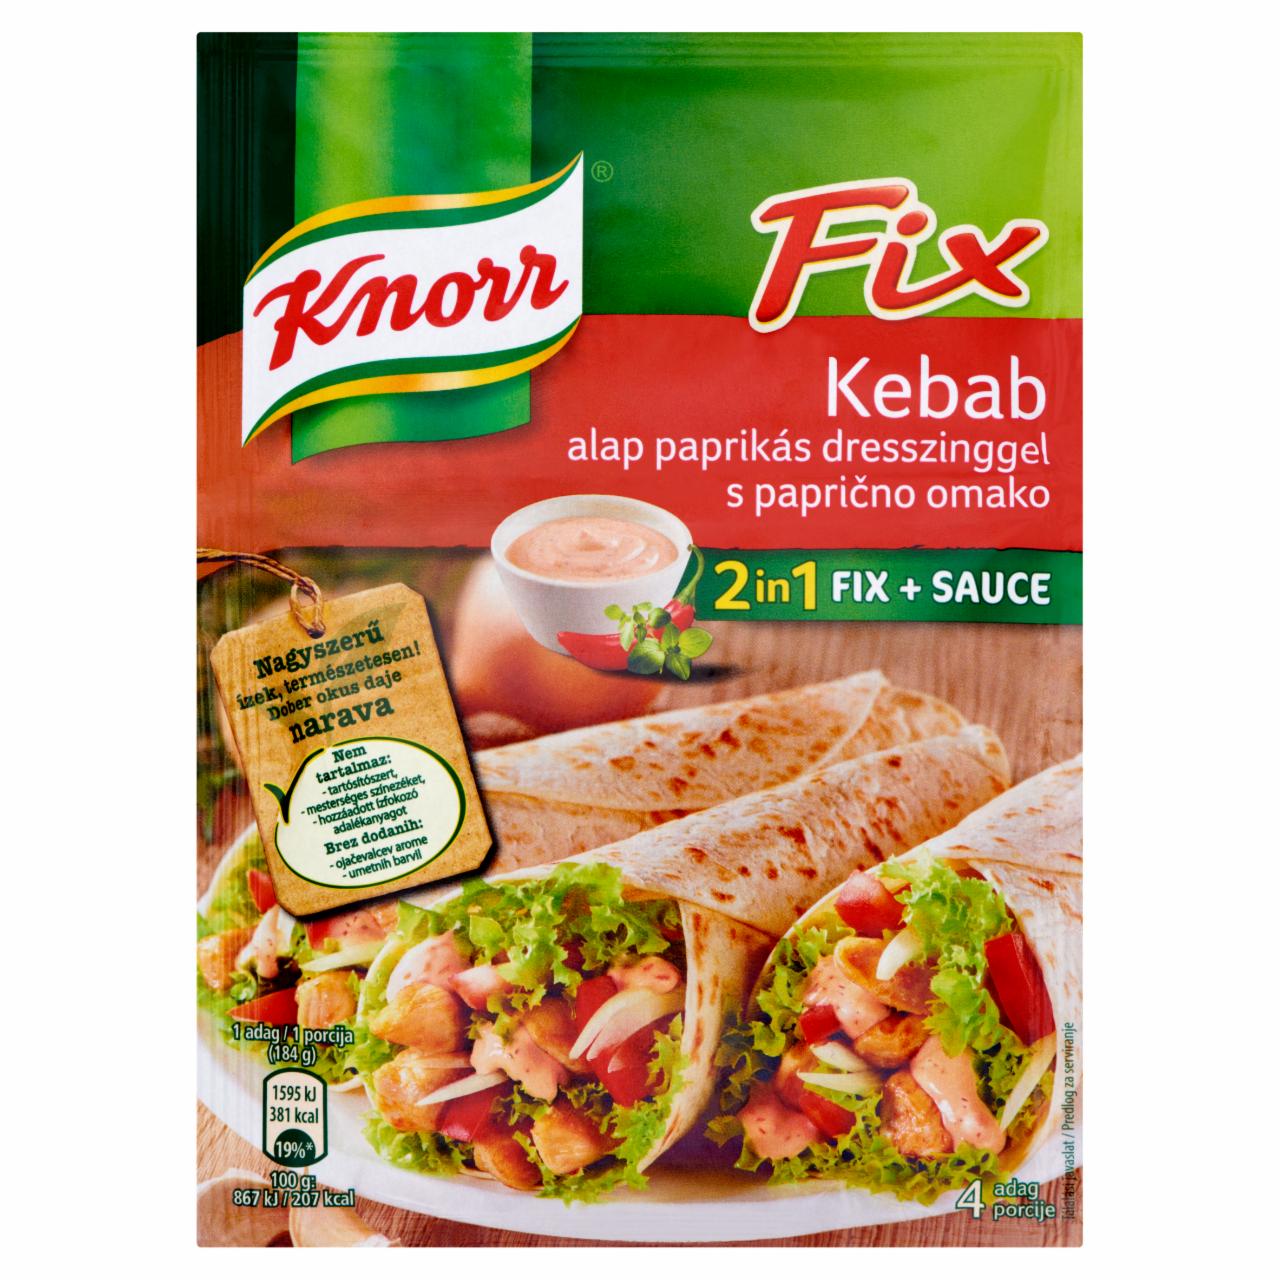 Képek - Knorr kebab alap 38 g